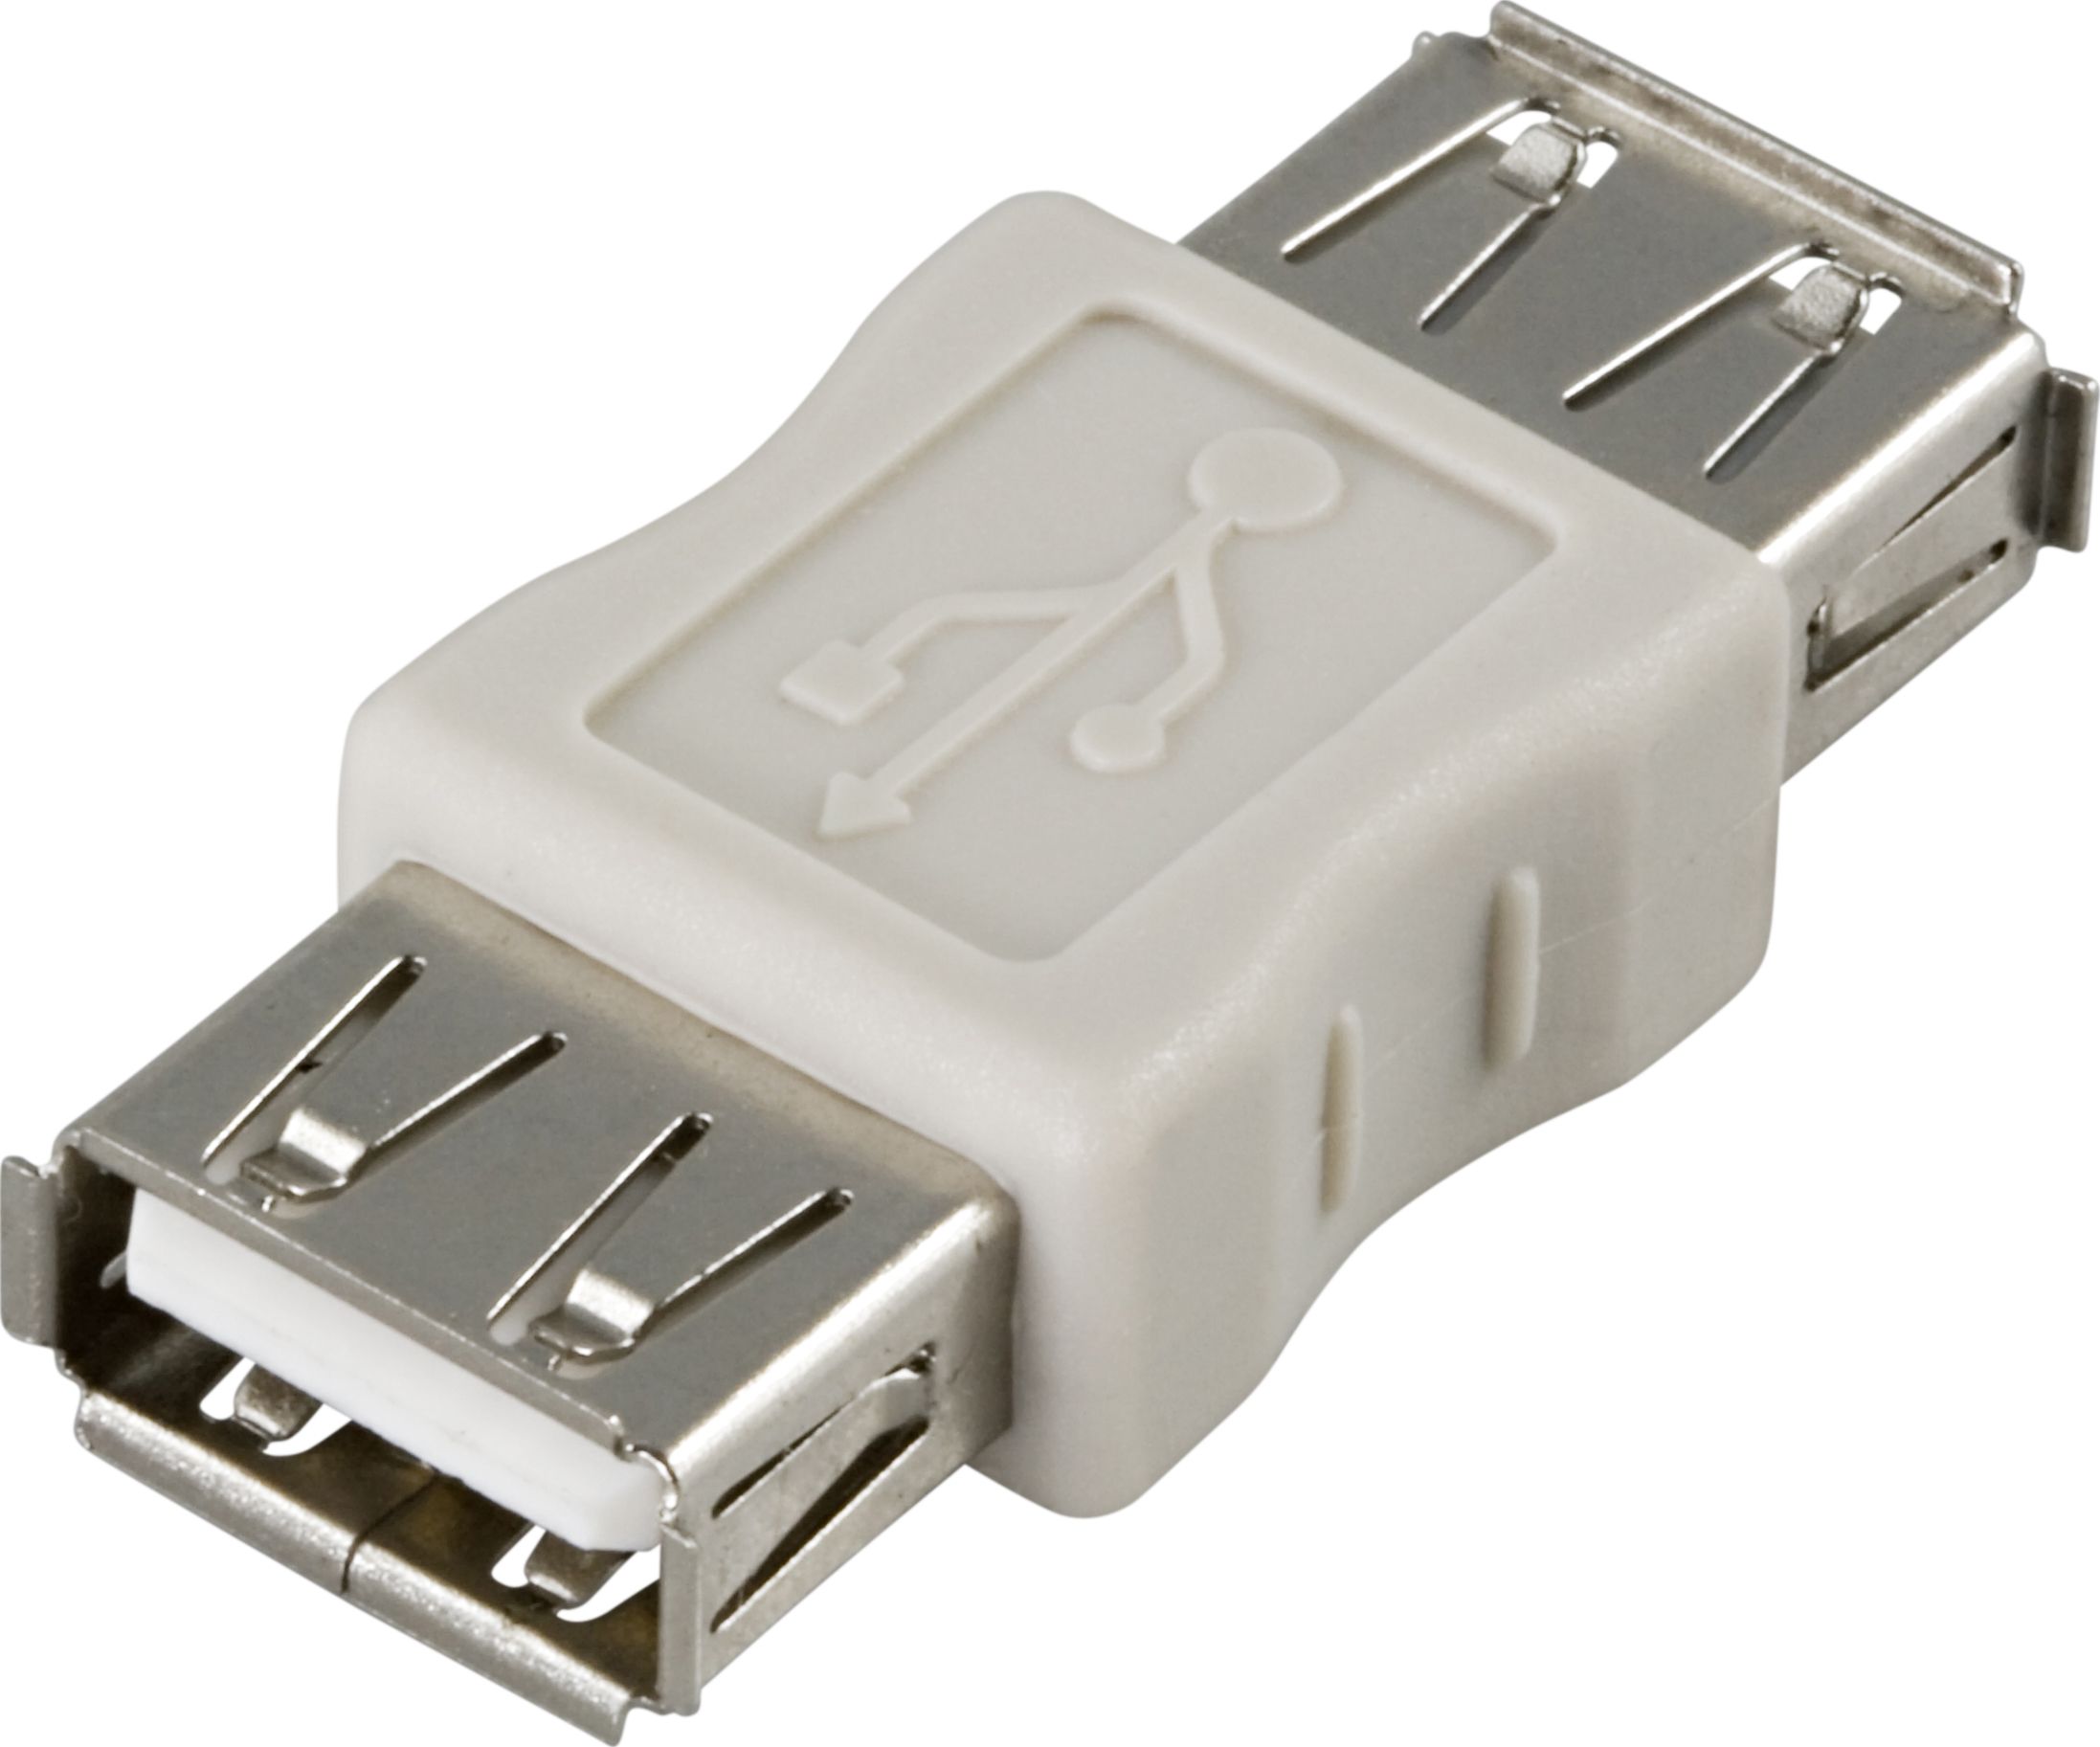 Usb вилка розетка. USB 2.0 разъём a15. Адаптер-соединитель USB 2.0 USB. Переходник USB 2.0 Type-a - USB 2.0 Type-a. Коннектор 1 USB 2.0 Type-a.